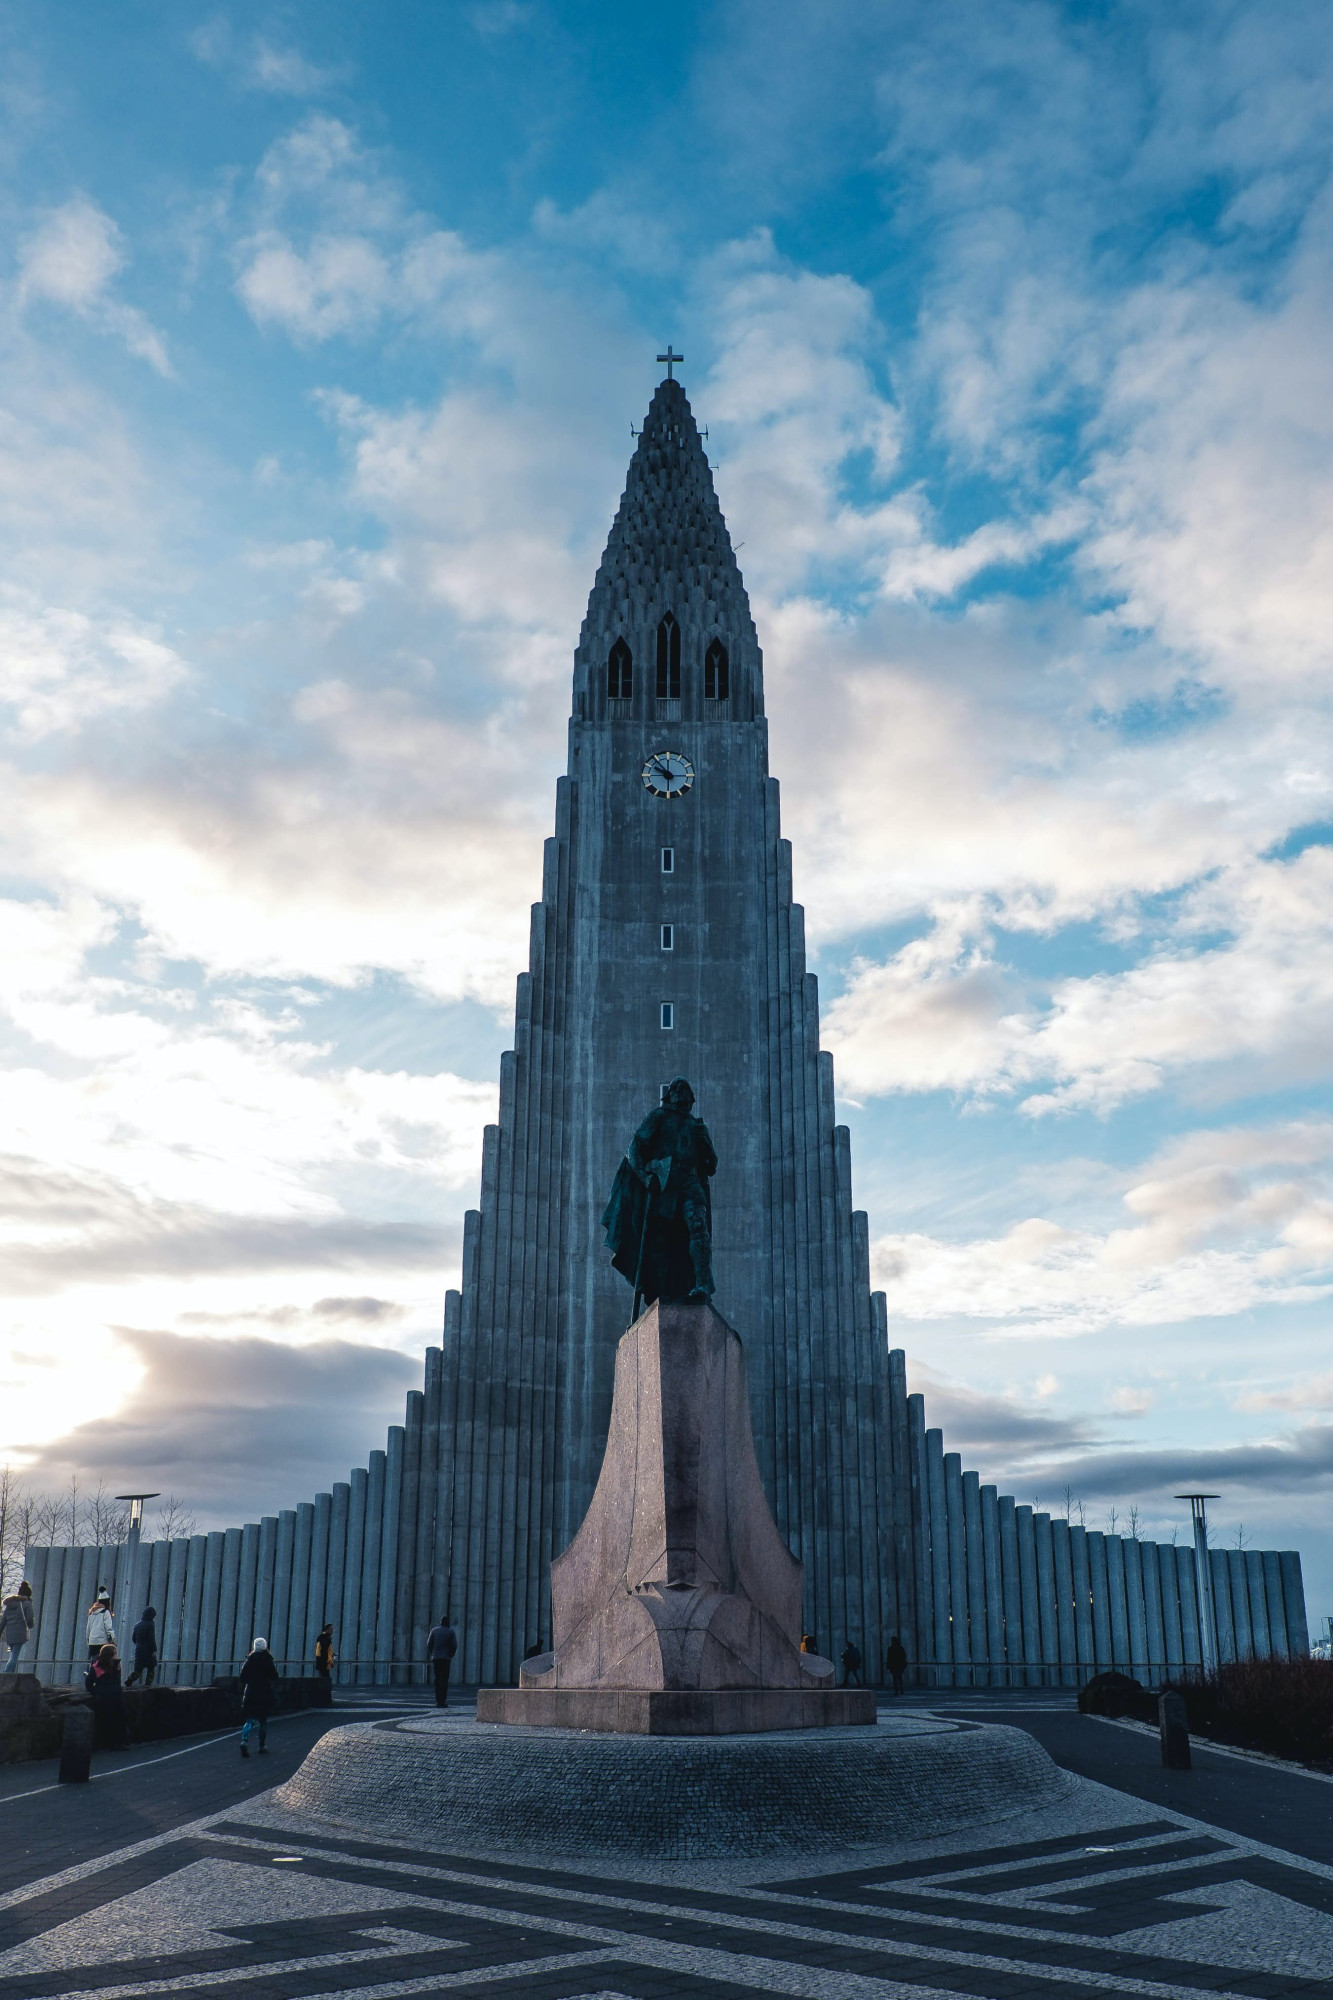 IJsland Reykjavik kerk